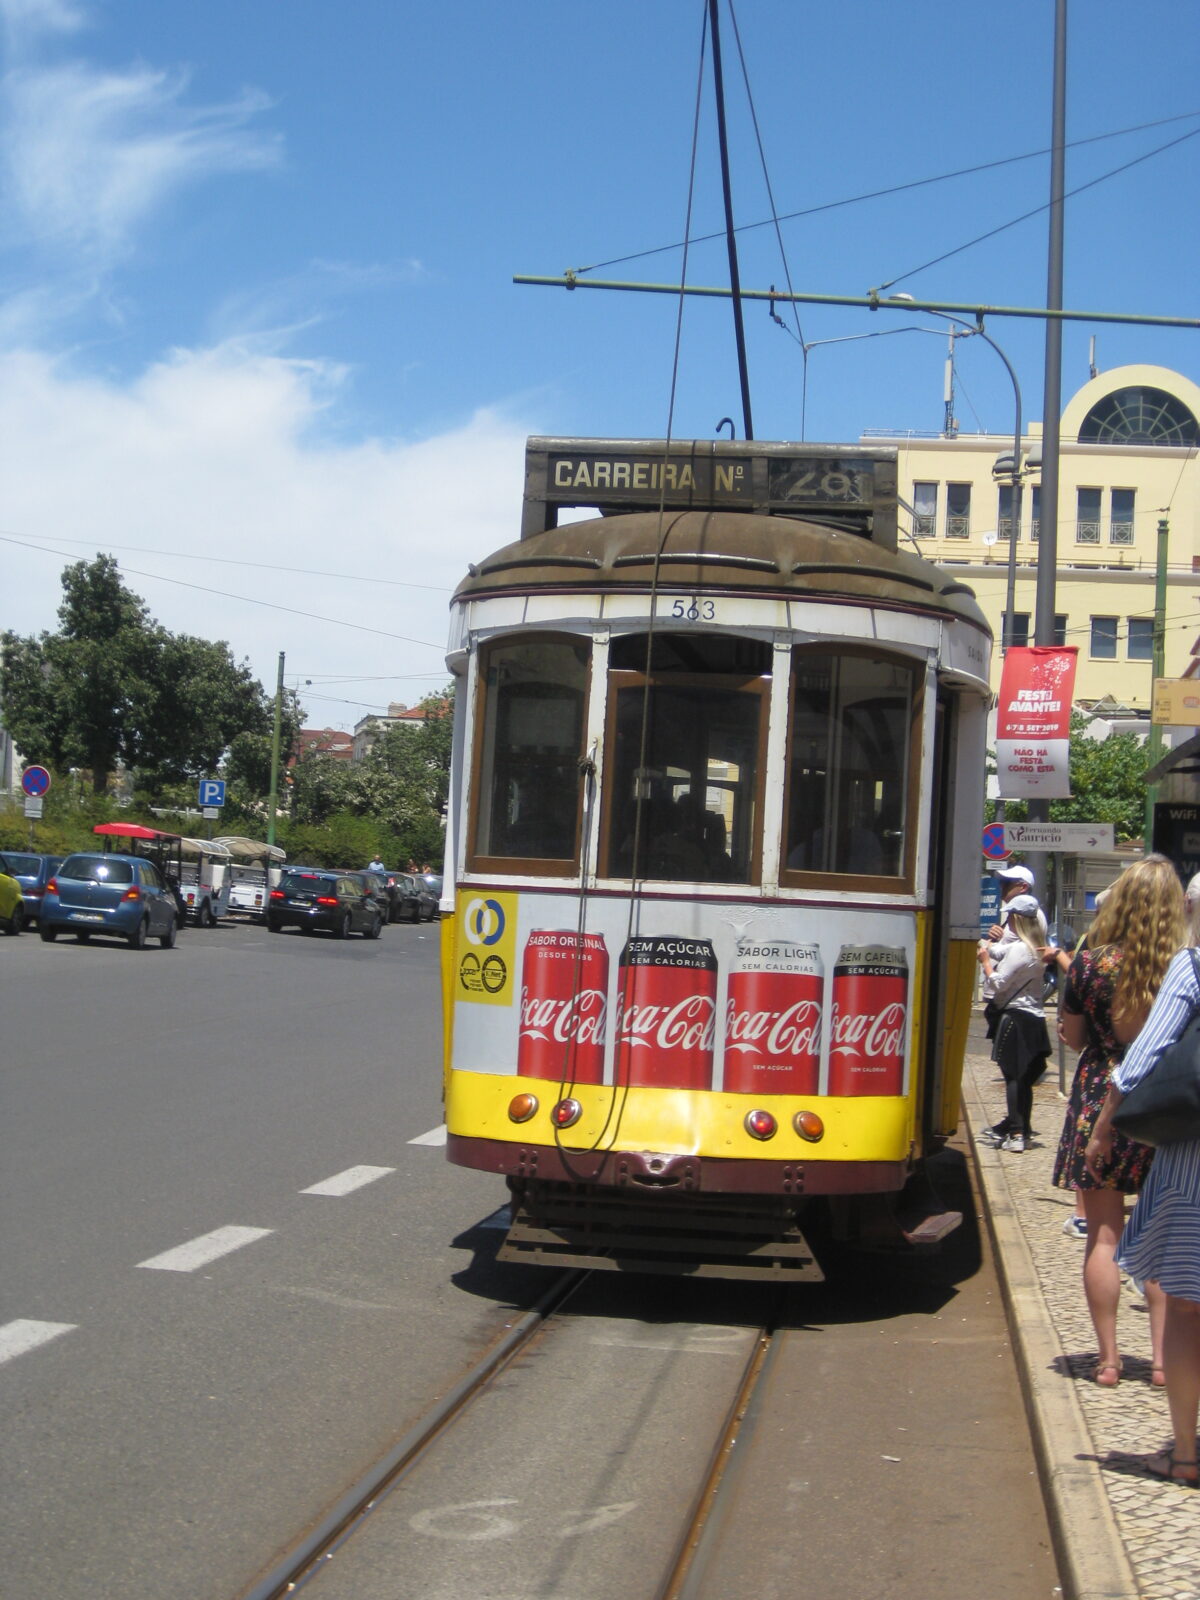 Tram #28, the Lisboa experience